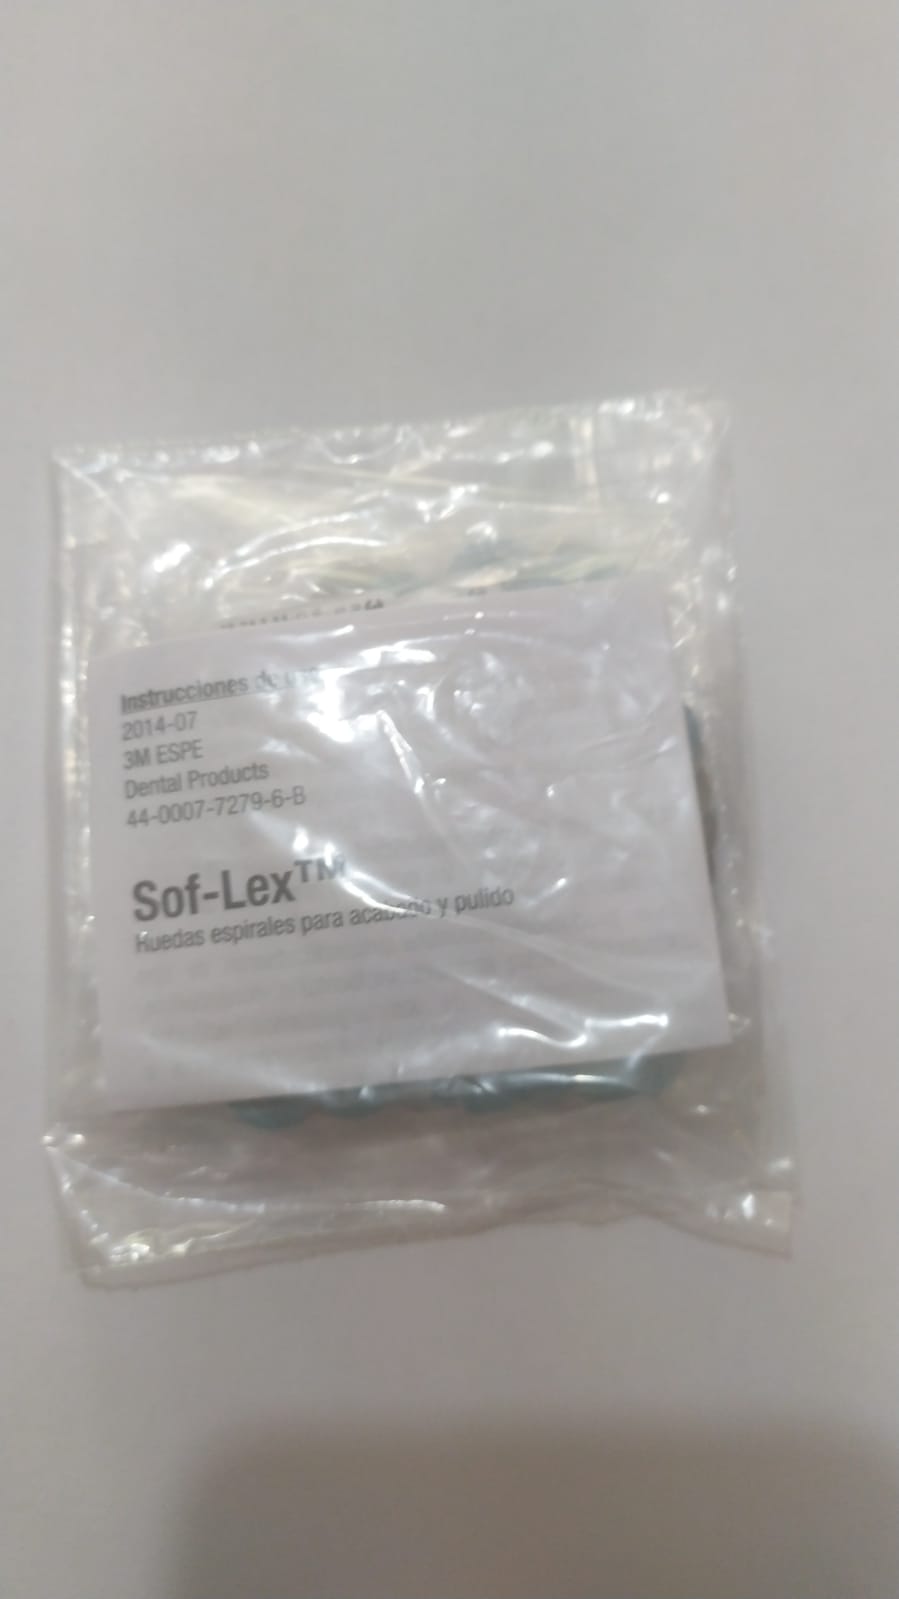 3M Soflex. Discos de acabado y pulido dental sof-lex paquete con 120 piezas